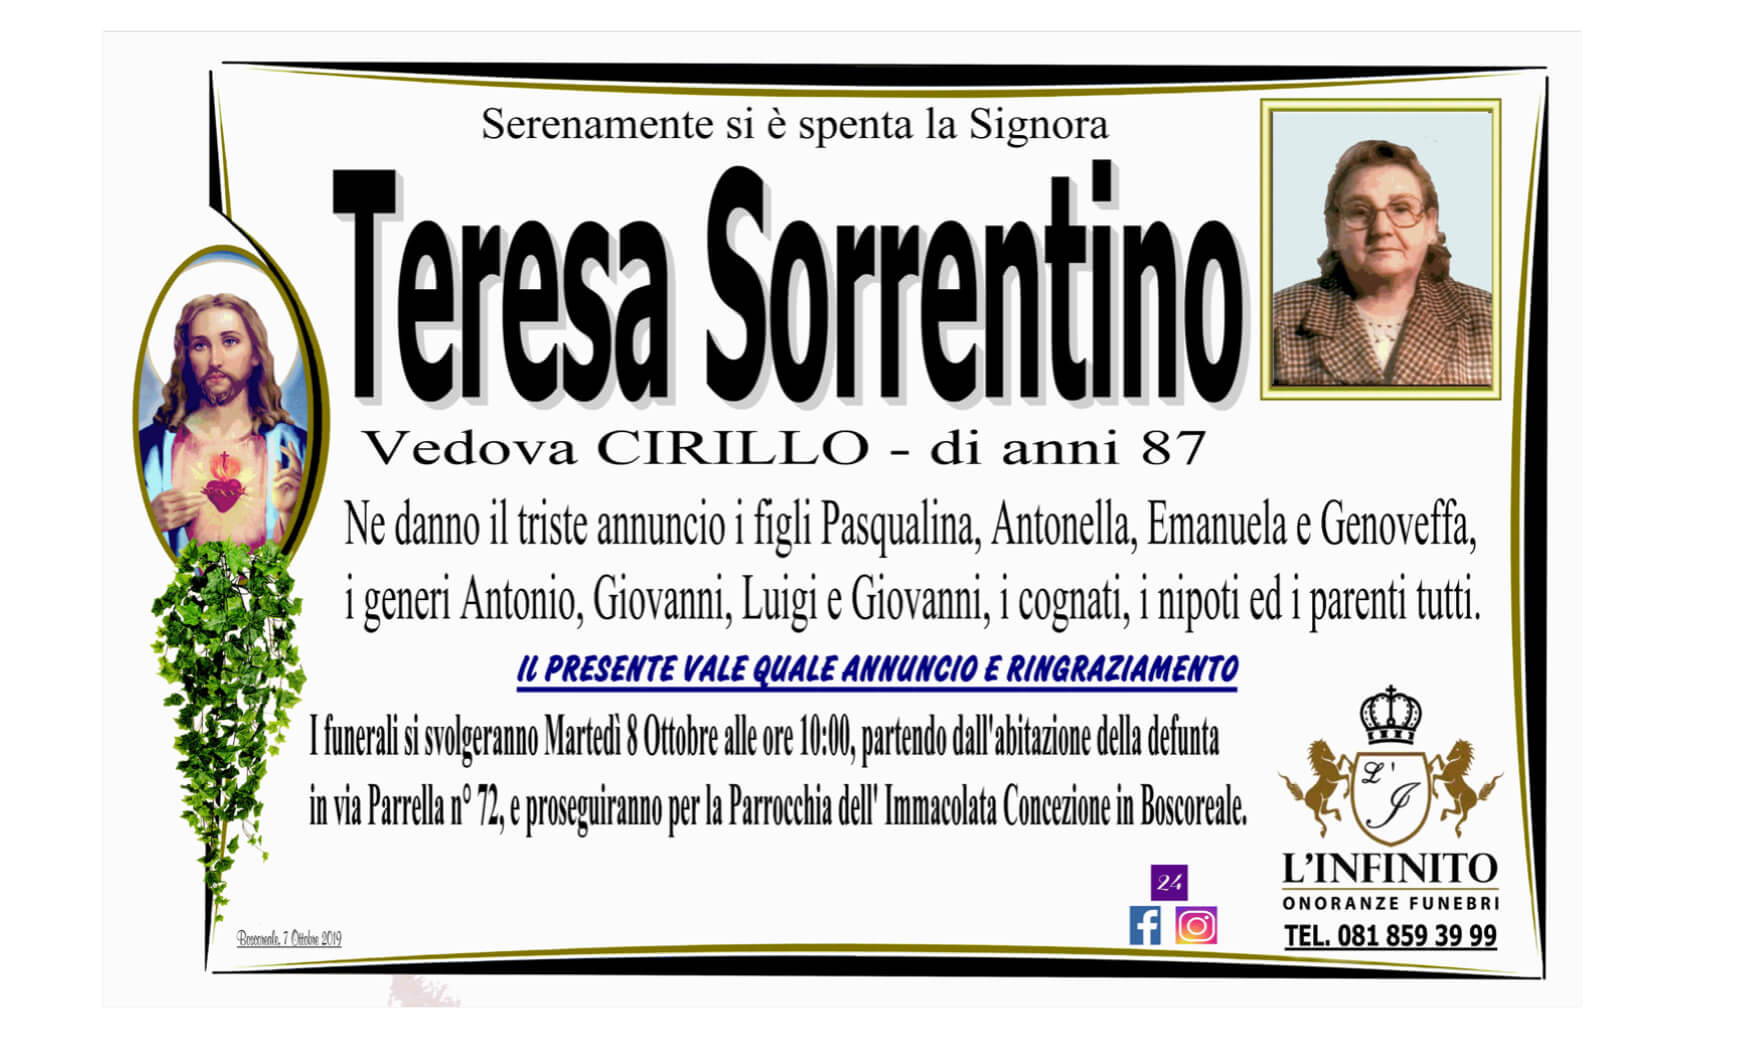 Teresa Sorrentino